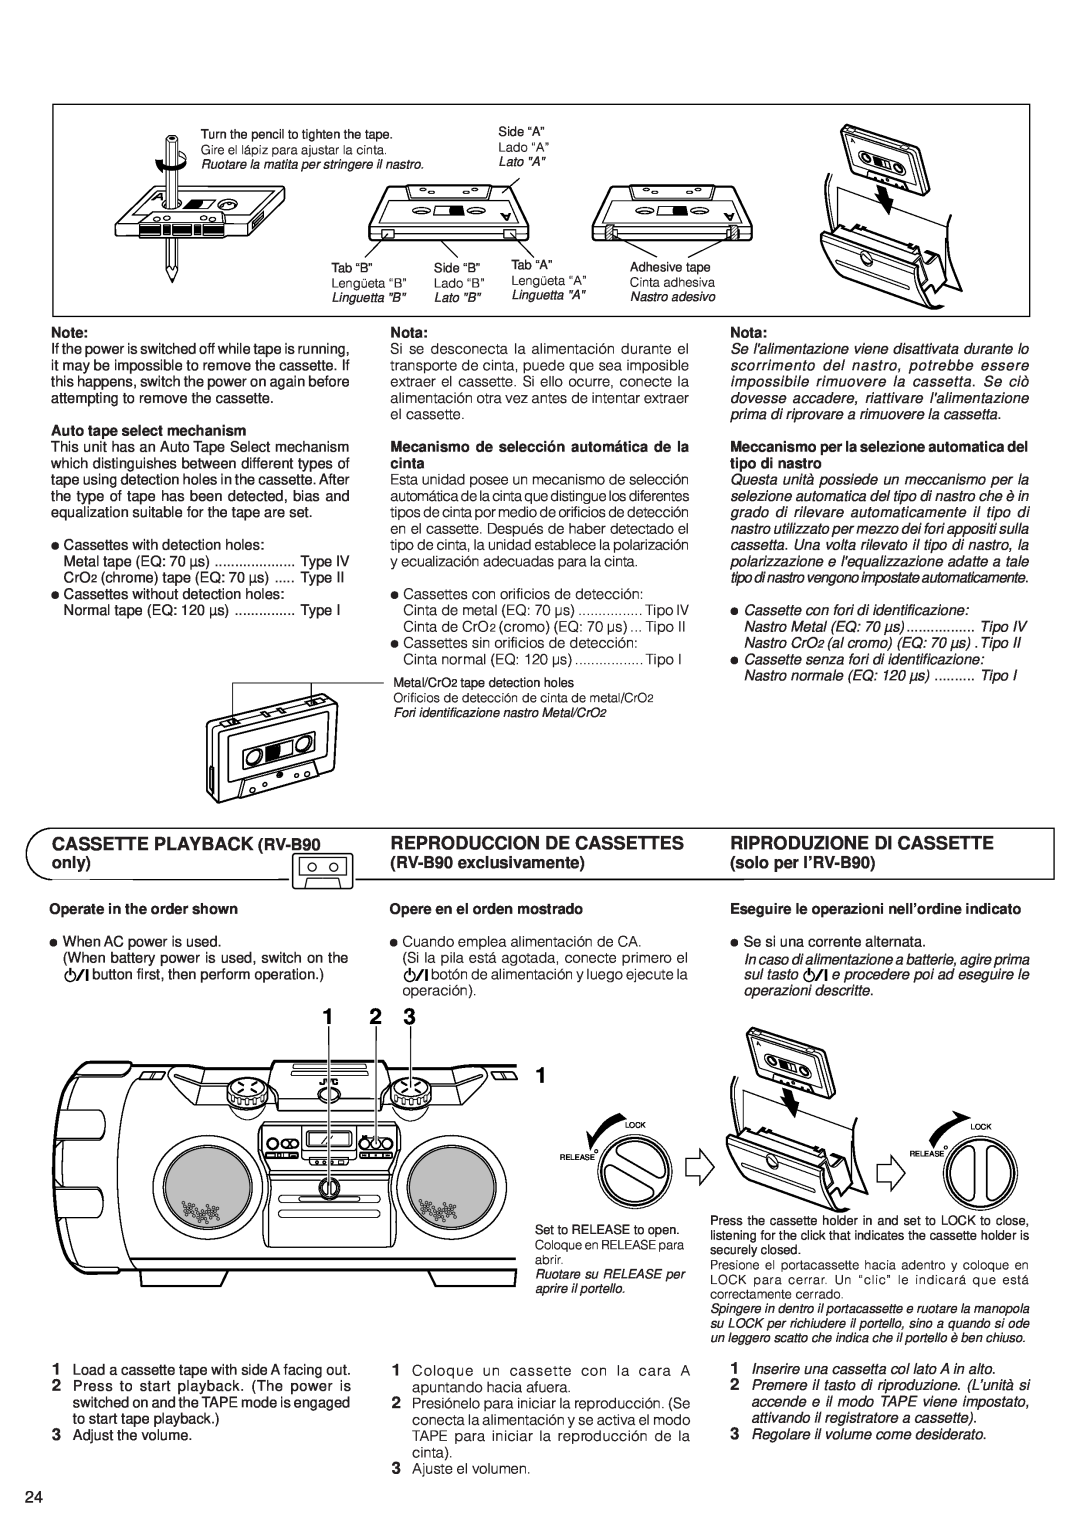 JVC RV-B70 manual CASSETTE PLAYBACK RV-B90, Reproduccion De Cassettes, Riproduzione Di Cassette, only, RV-B90exclusivamente 